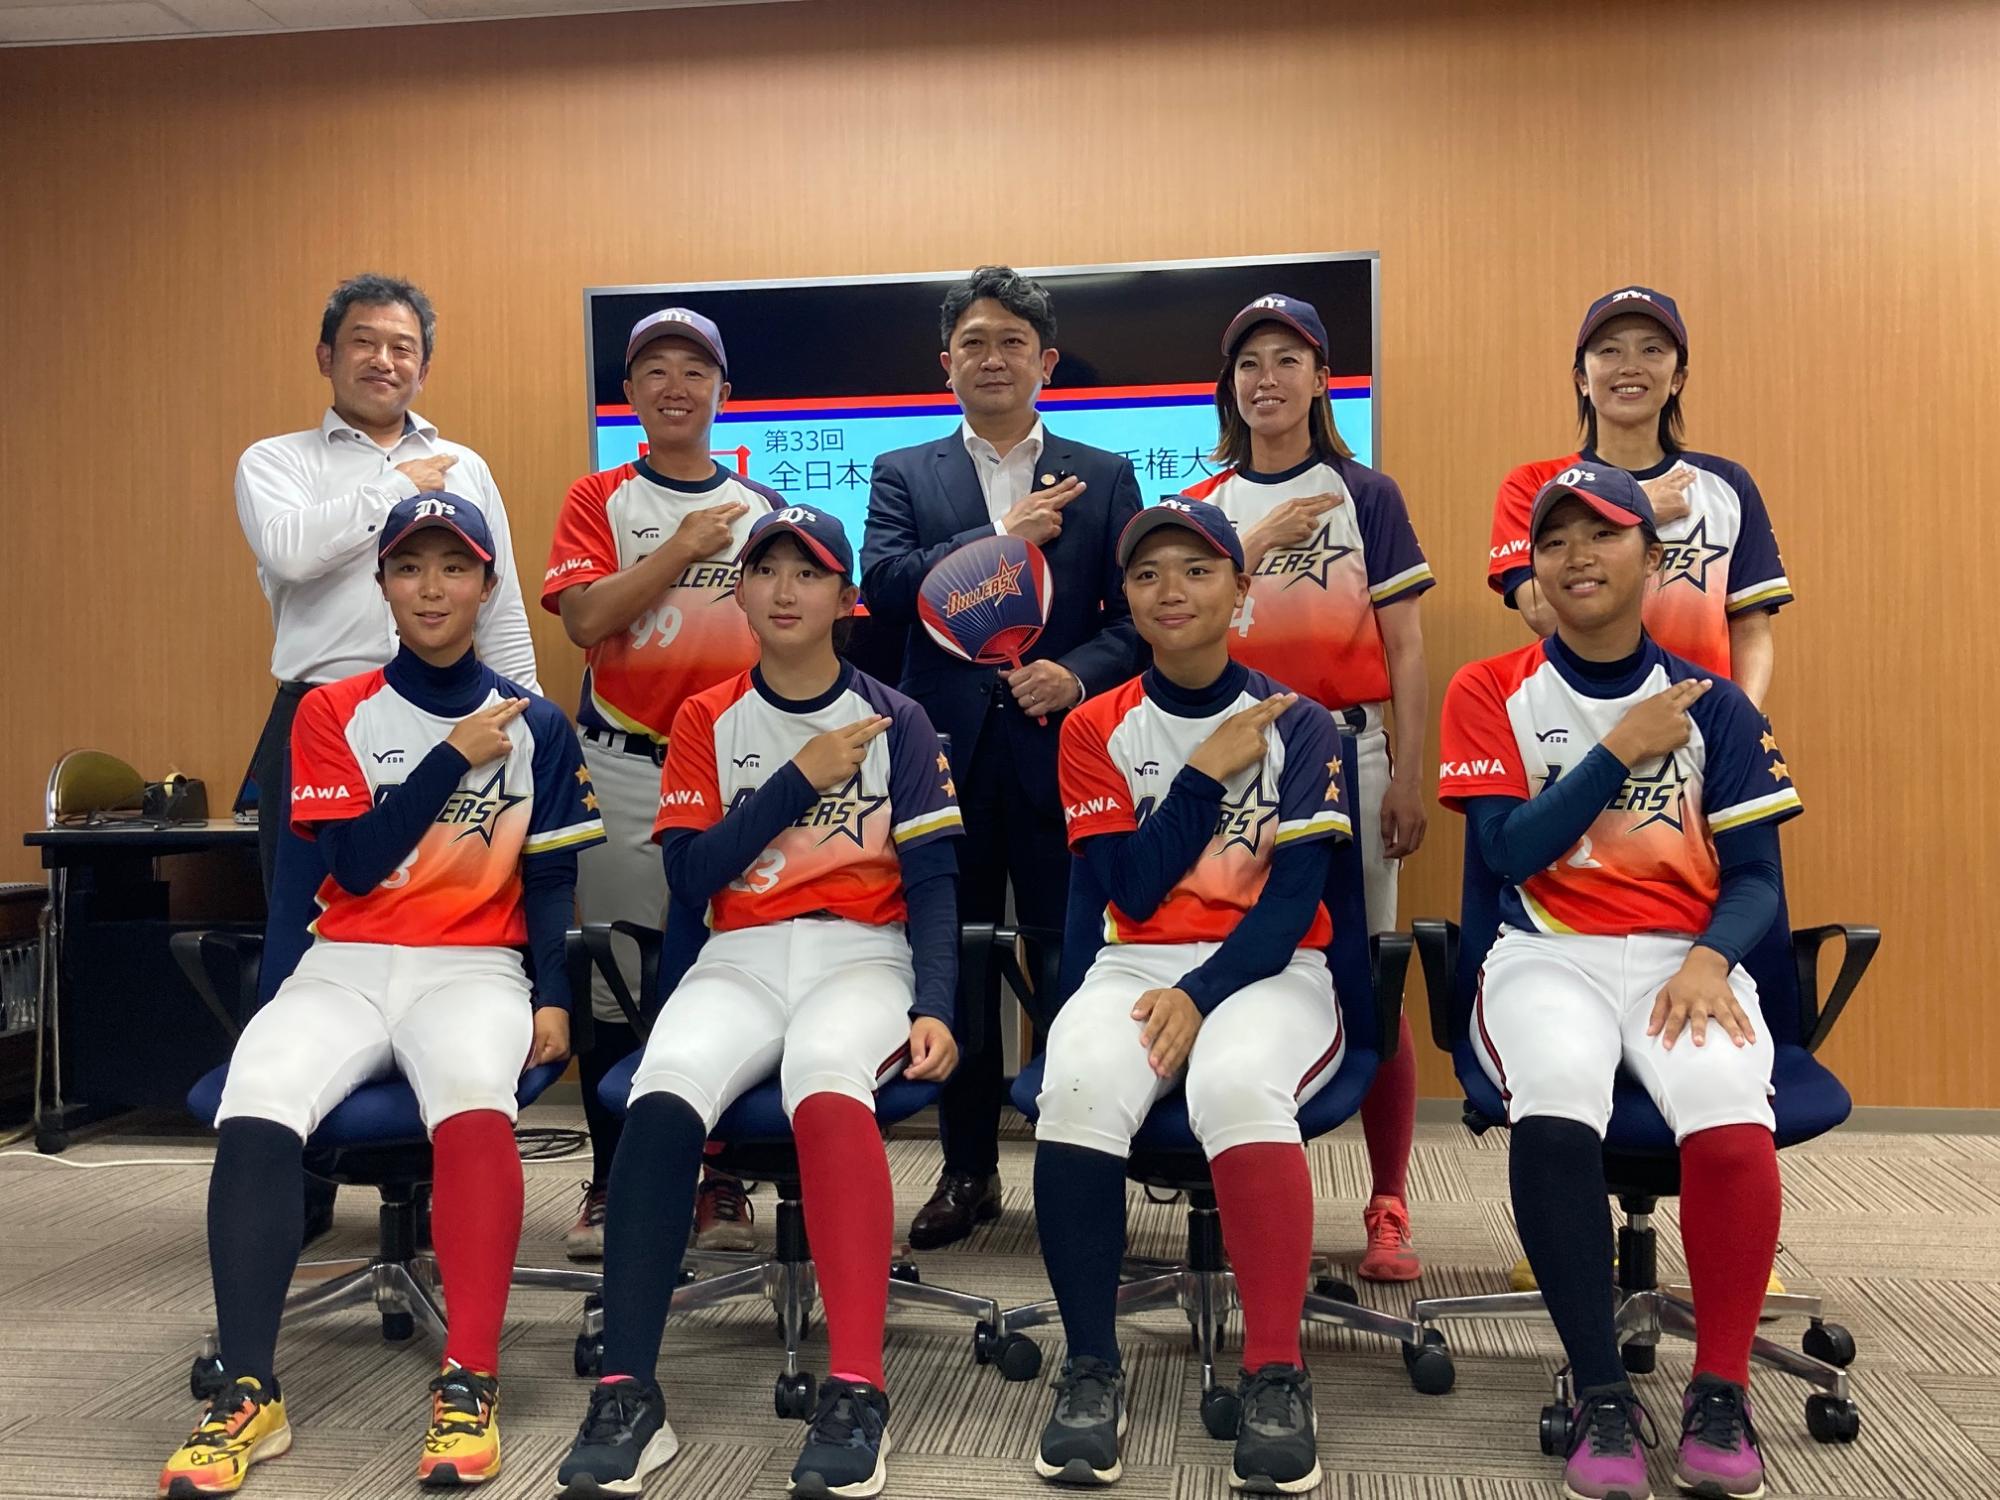 全日本女子軟式野球選手権大会に出場する「ダラーズ」の選手と市長の写真